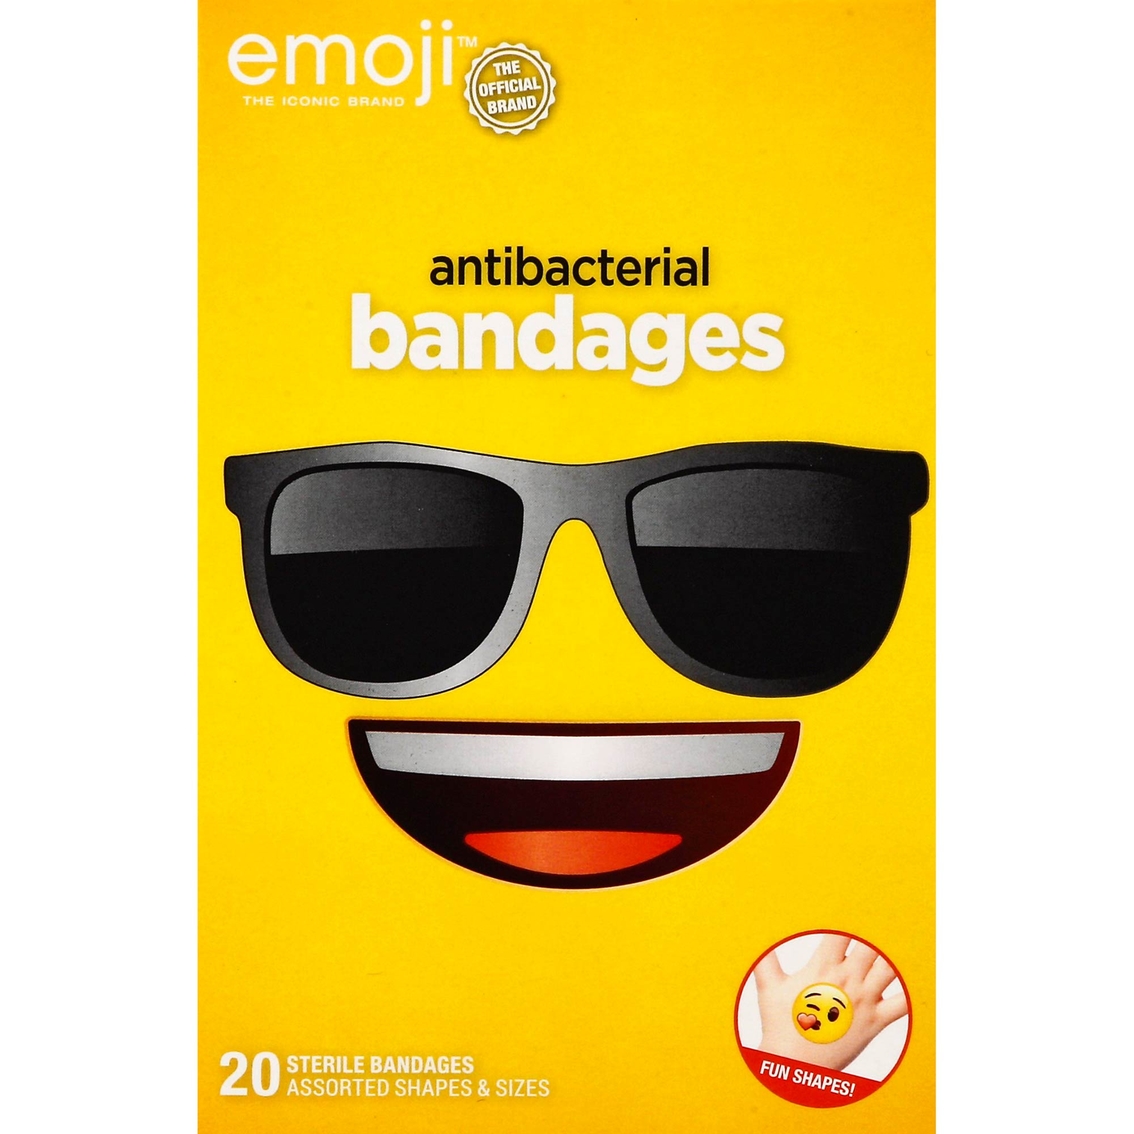 Emoji Antibacterial Bandages 20 ct. - Image 4 of 4